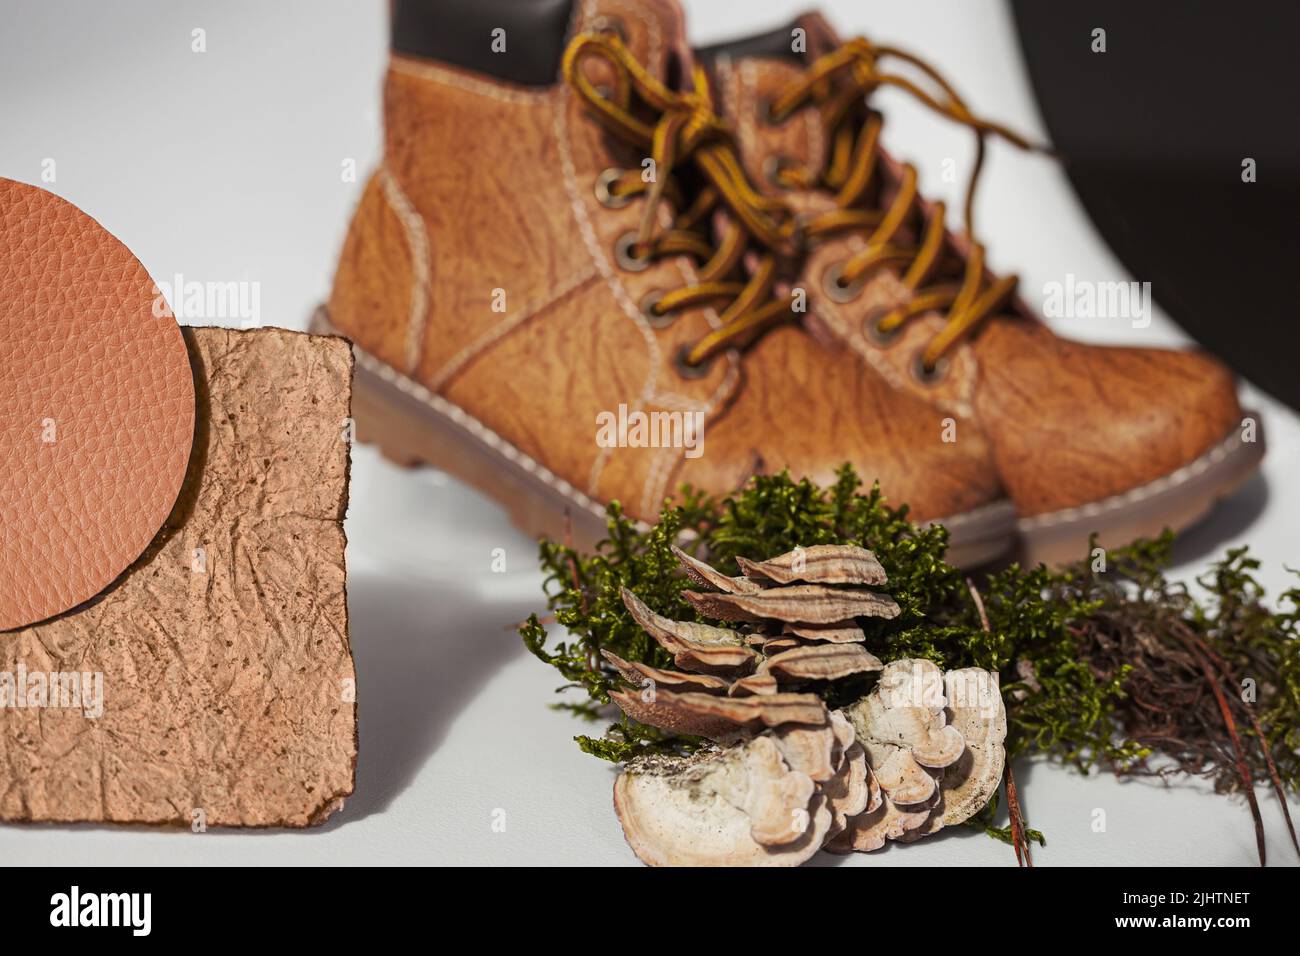 Chaussures en cuir vegan de mycélium de champignons. Échantillons de cuir bio vegan, concept écologique Banque D'Images